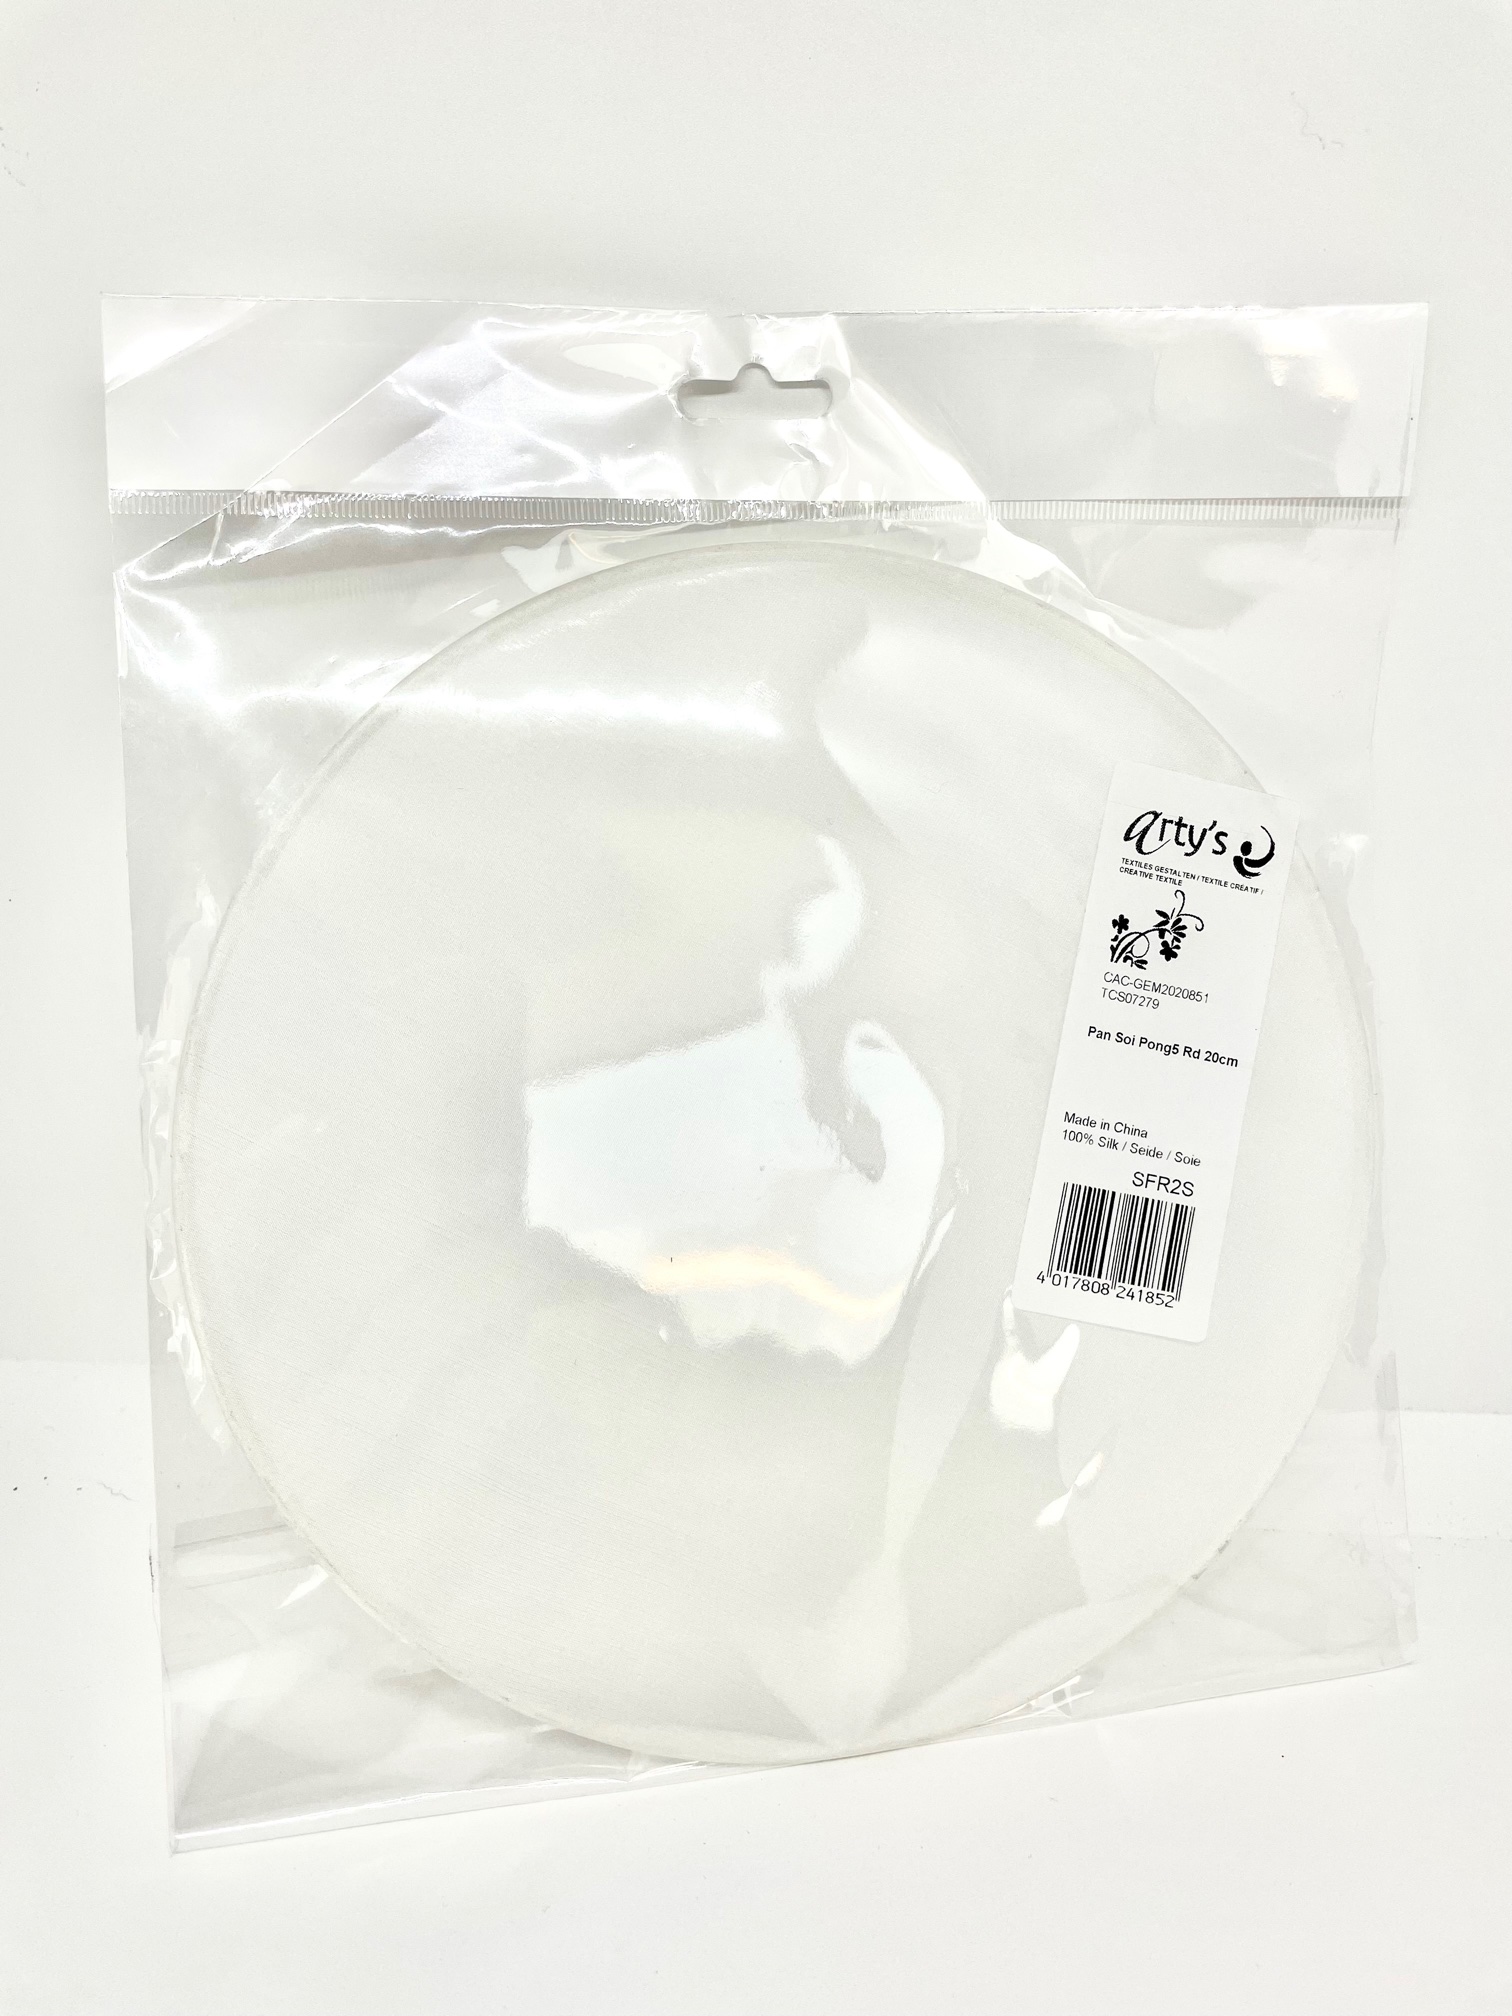 Delantal blanco algodon con bolsillo central. Talla M-XL 65x84cm 210g-m² -  ArtBendix